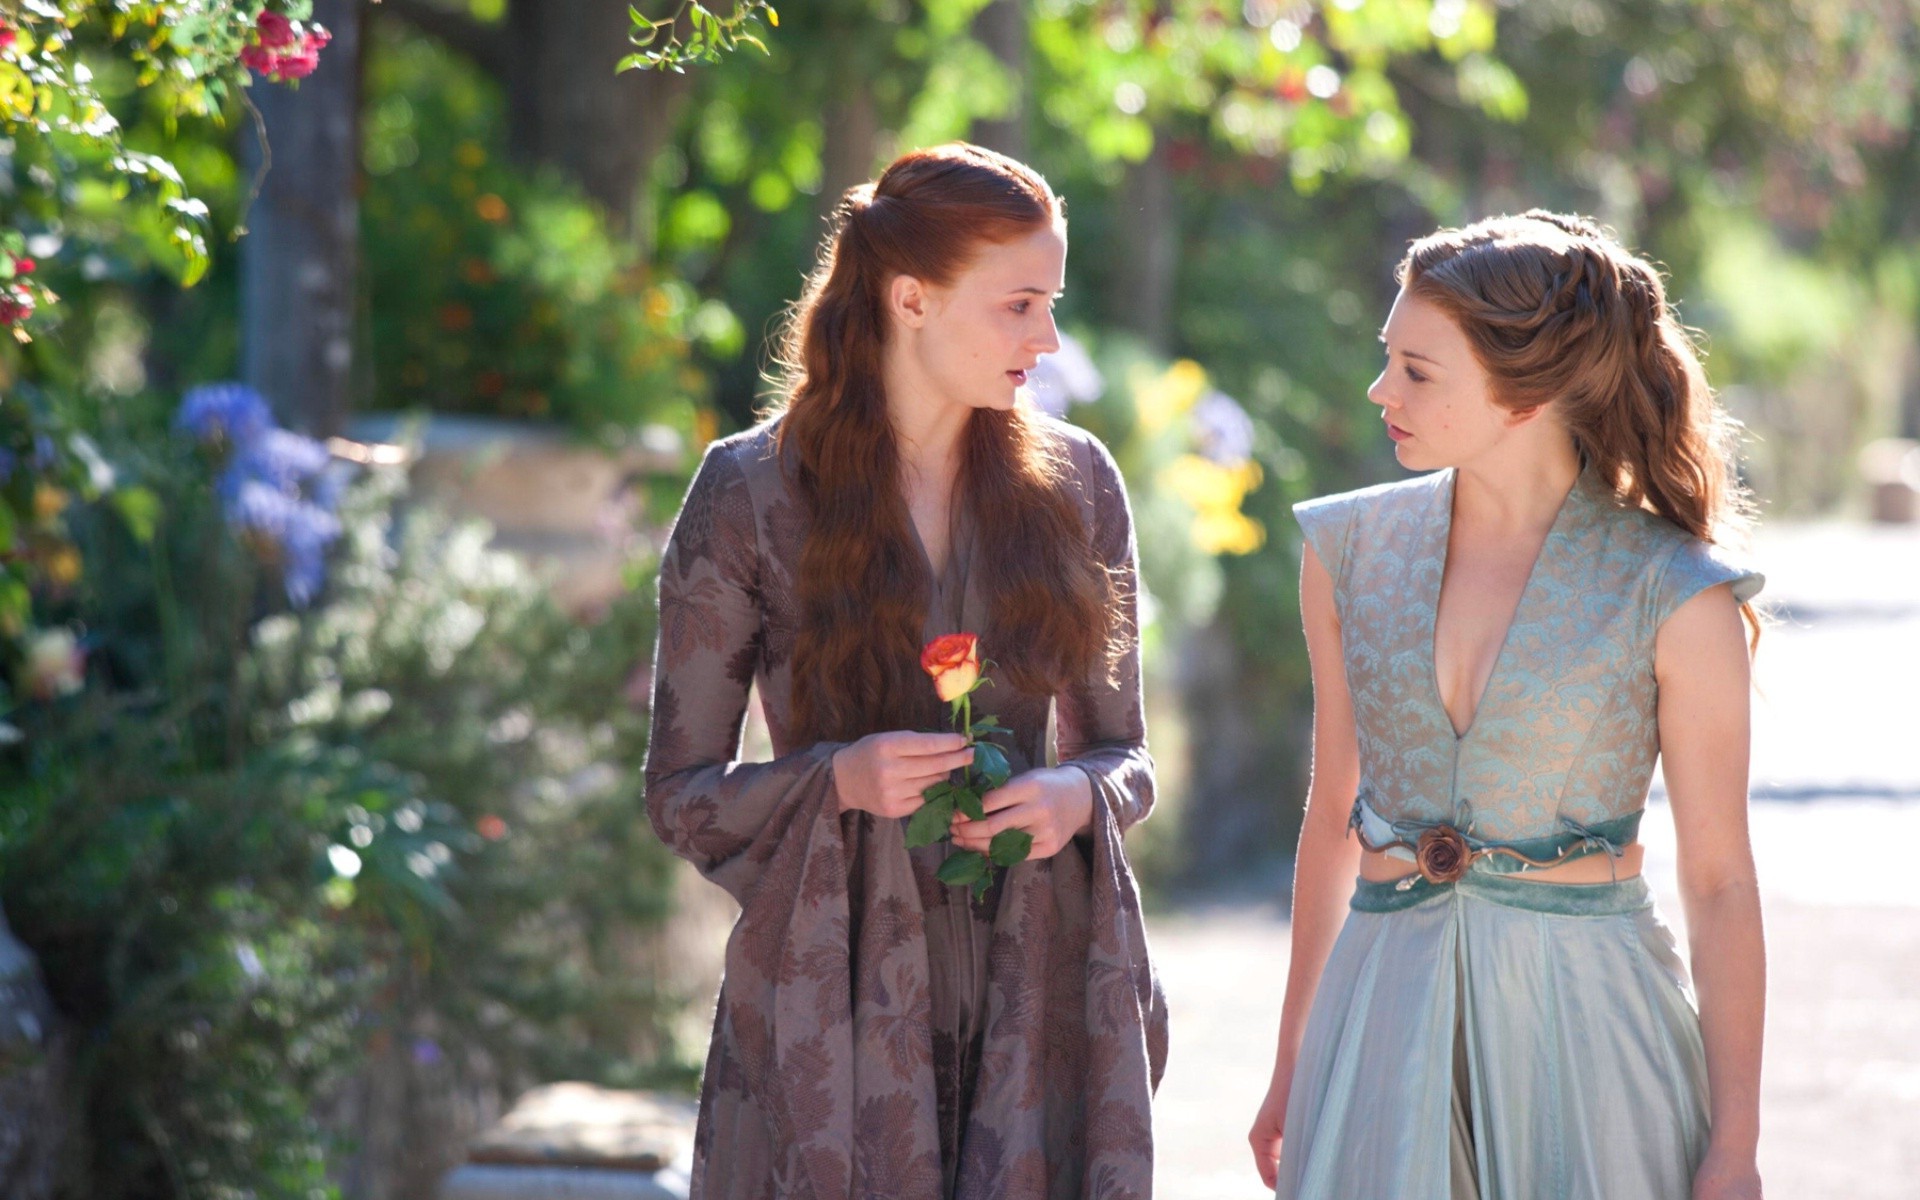 Η Σάνσα θέλει λεσβιακή σχέση με τη Νάταλι Ντόρμερ (και όχι μόνο) στο Game of Thrones